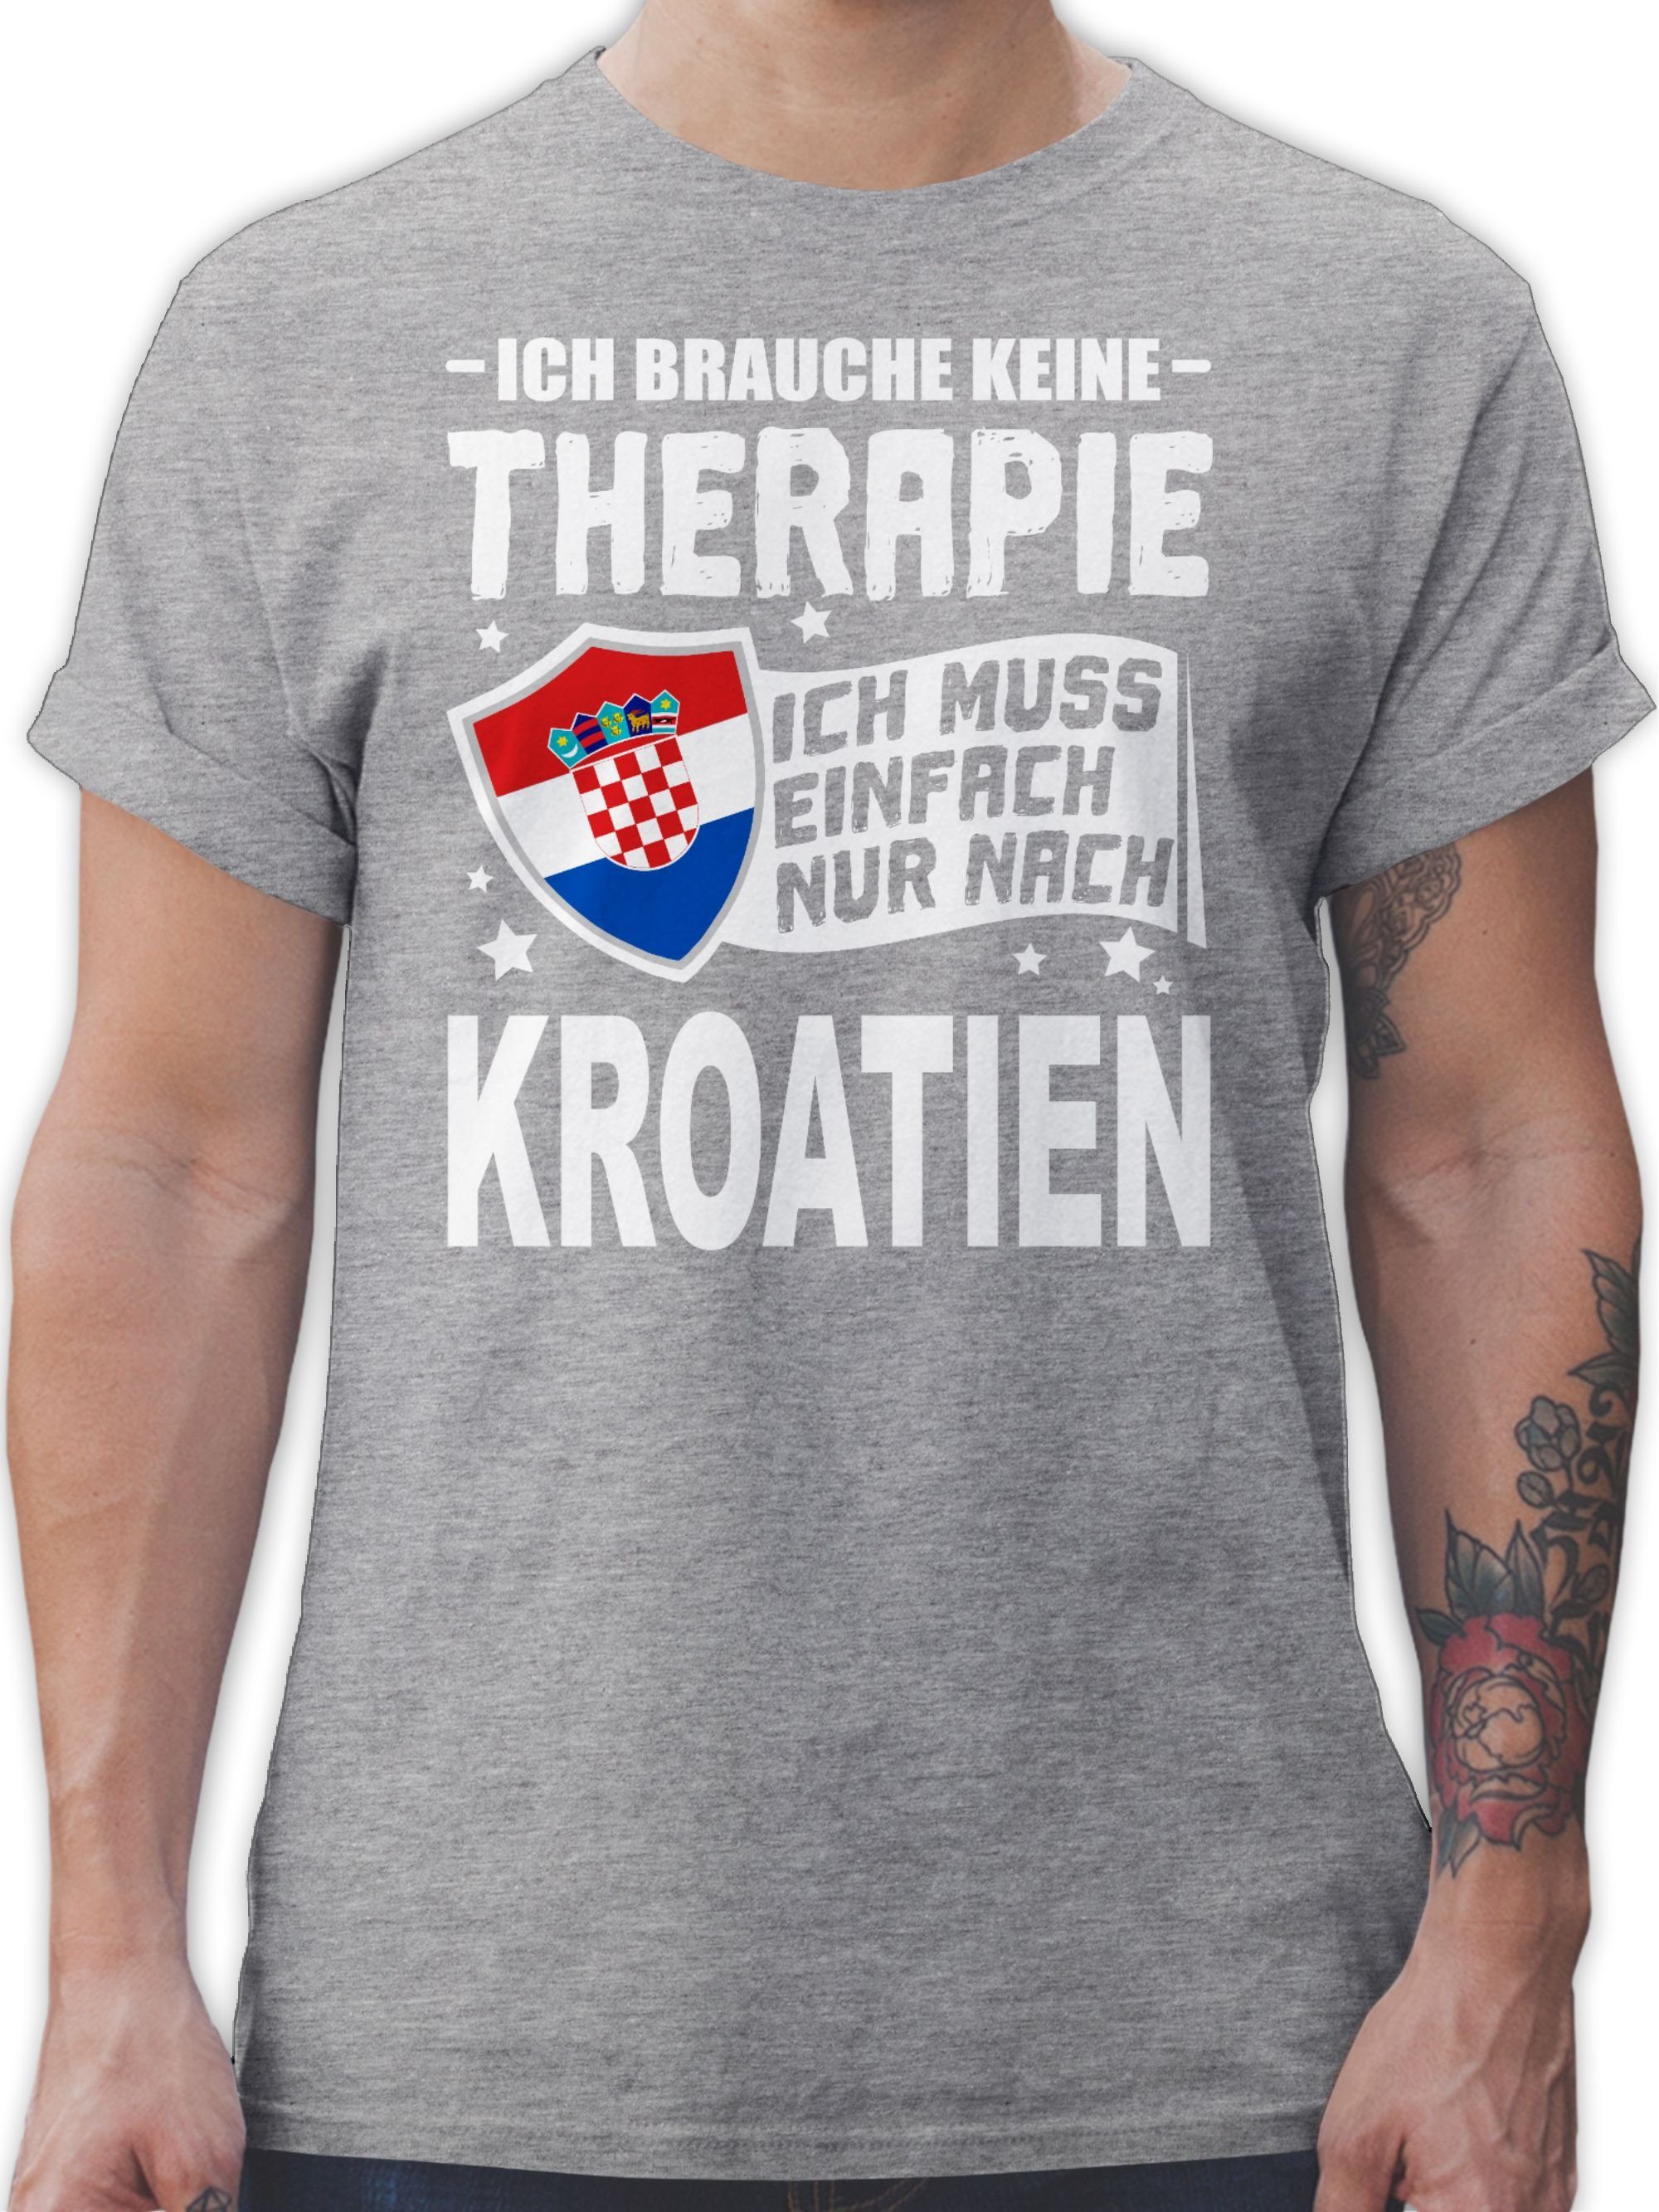 Shirtracer T-Shirt Ich brauche keine Therapie Ich muss einfach nur nach Kroatien - weiß Länder Wappen 3 Grau meliert